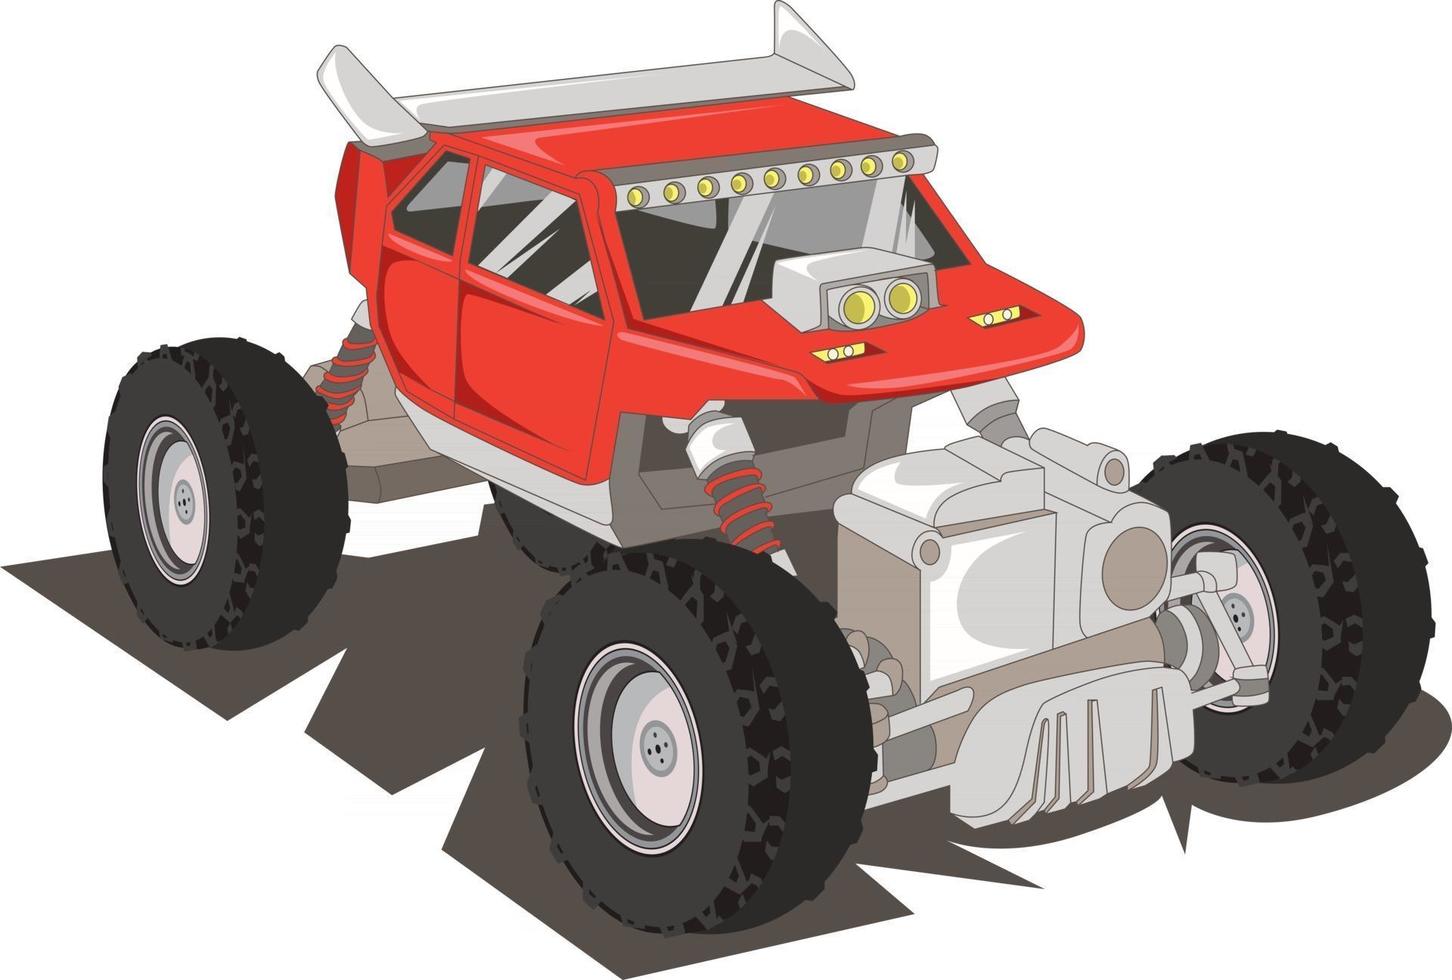 ilustração vetorial de monster truck vetor